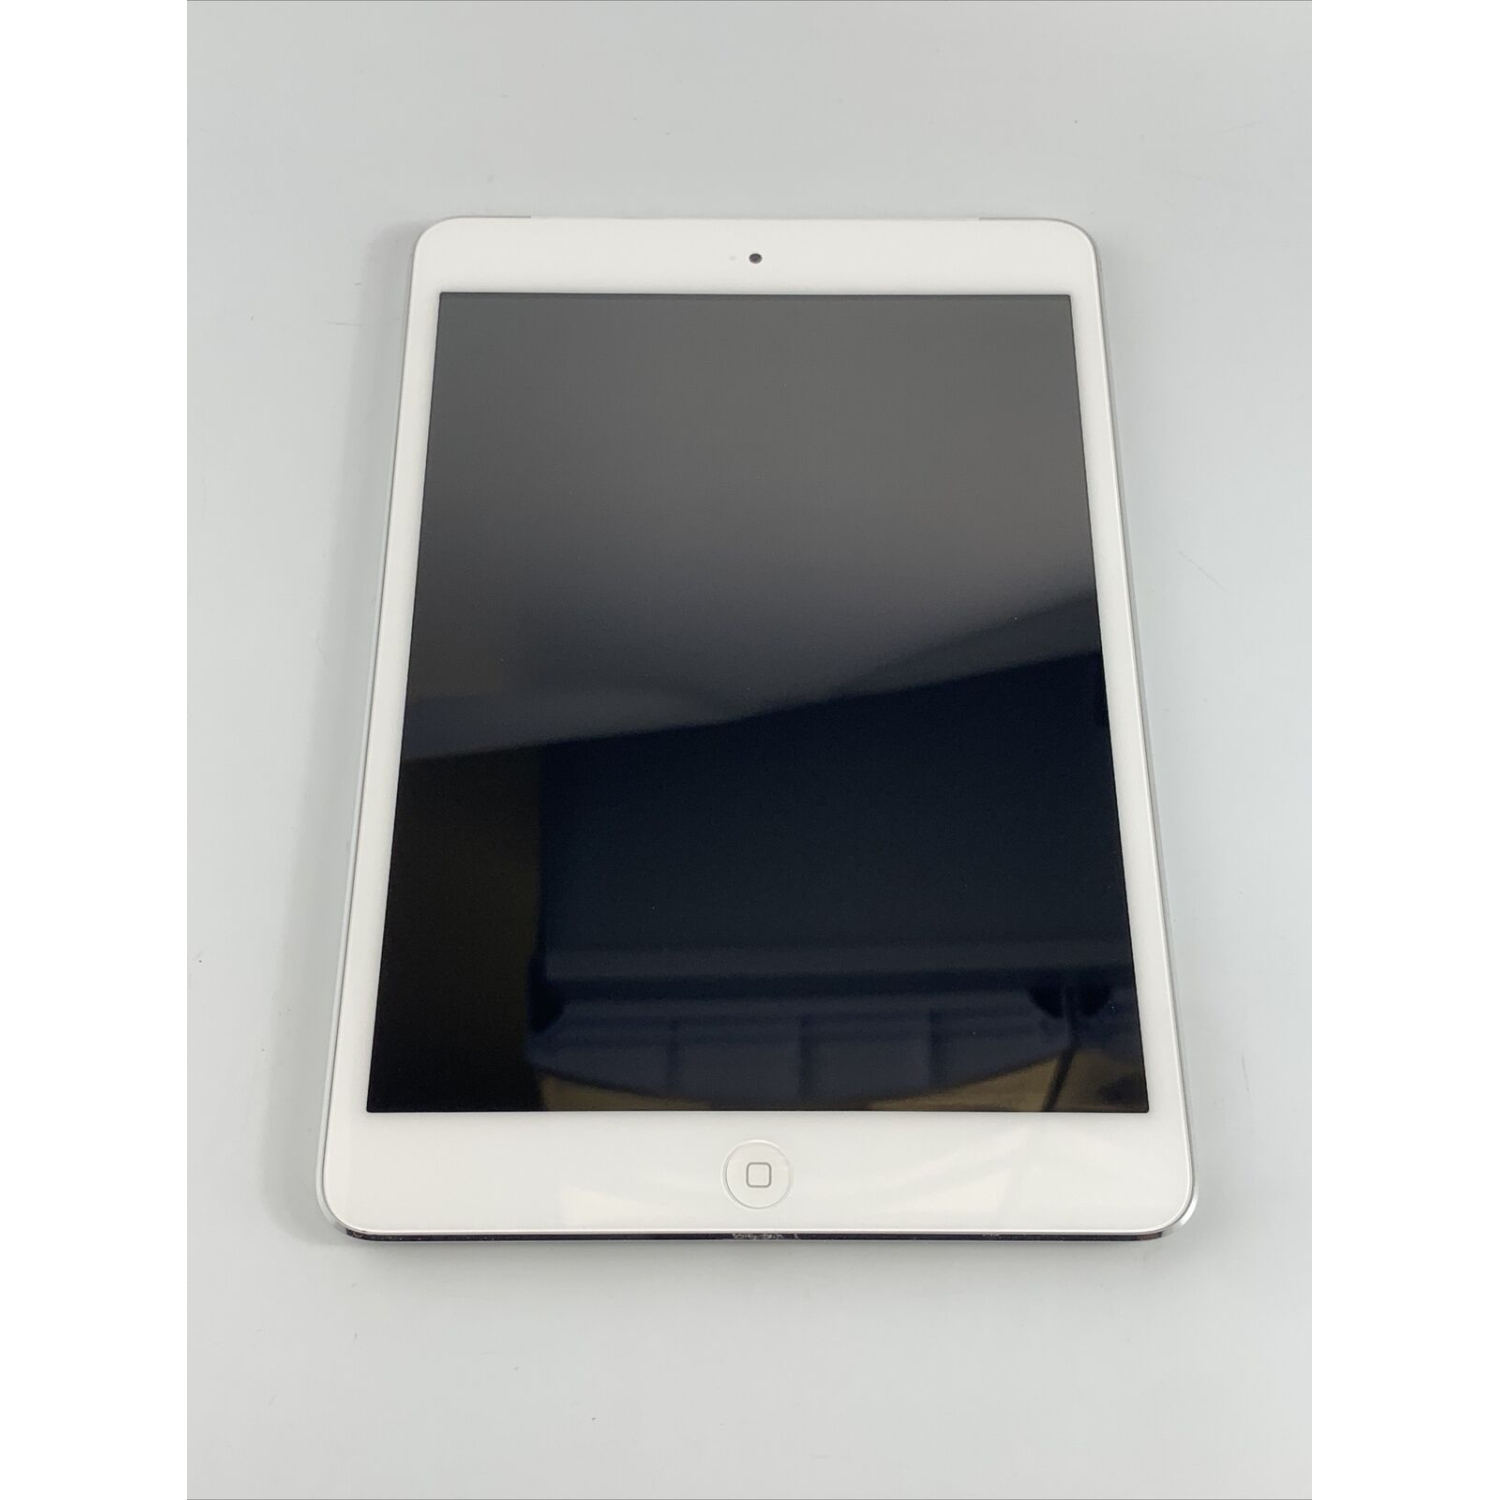 Refurbished (Good) - Apple iPad Mini A1432 (1st Generation) 16GB Silver WiFi